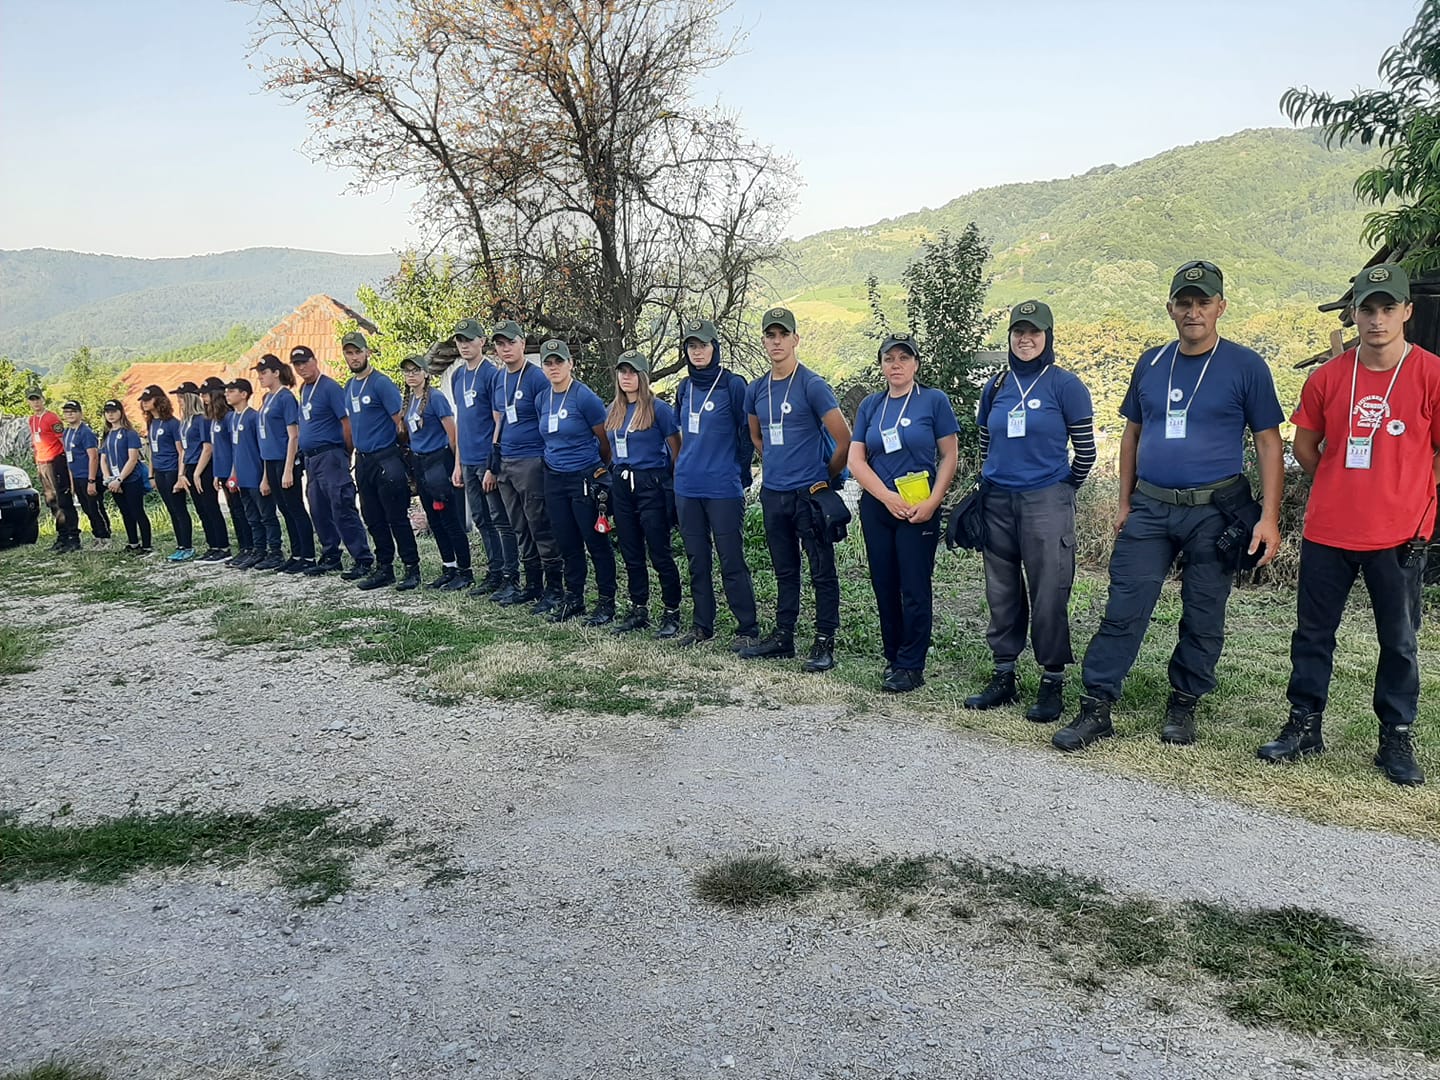 Marš mira krenuo ka Potočarima: Hiljade ljudi na putu spasa dugom 100 kilometara